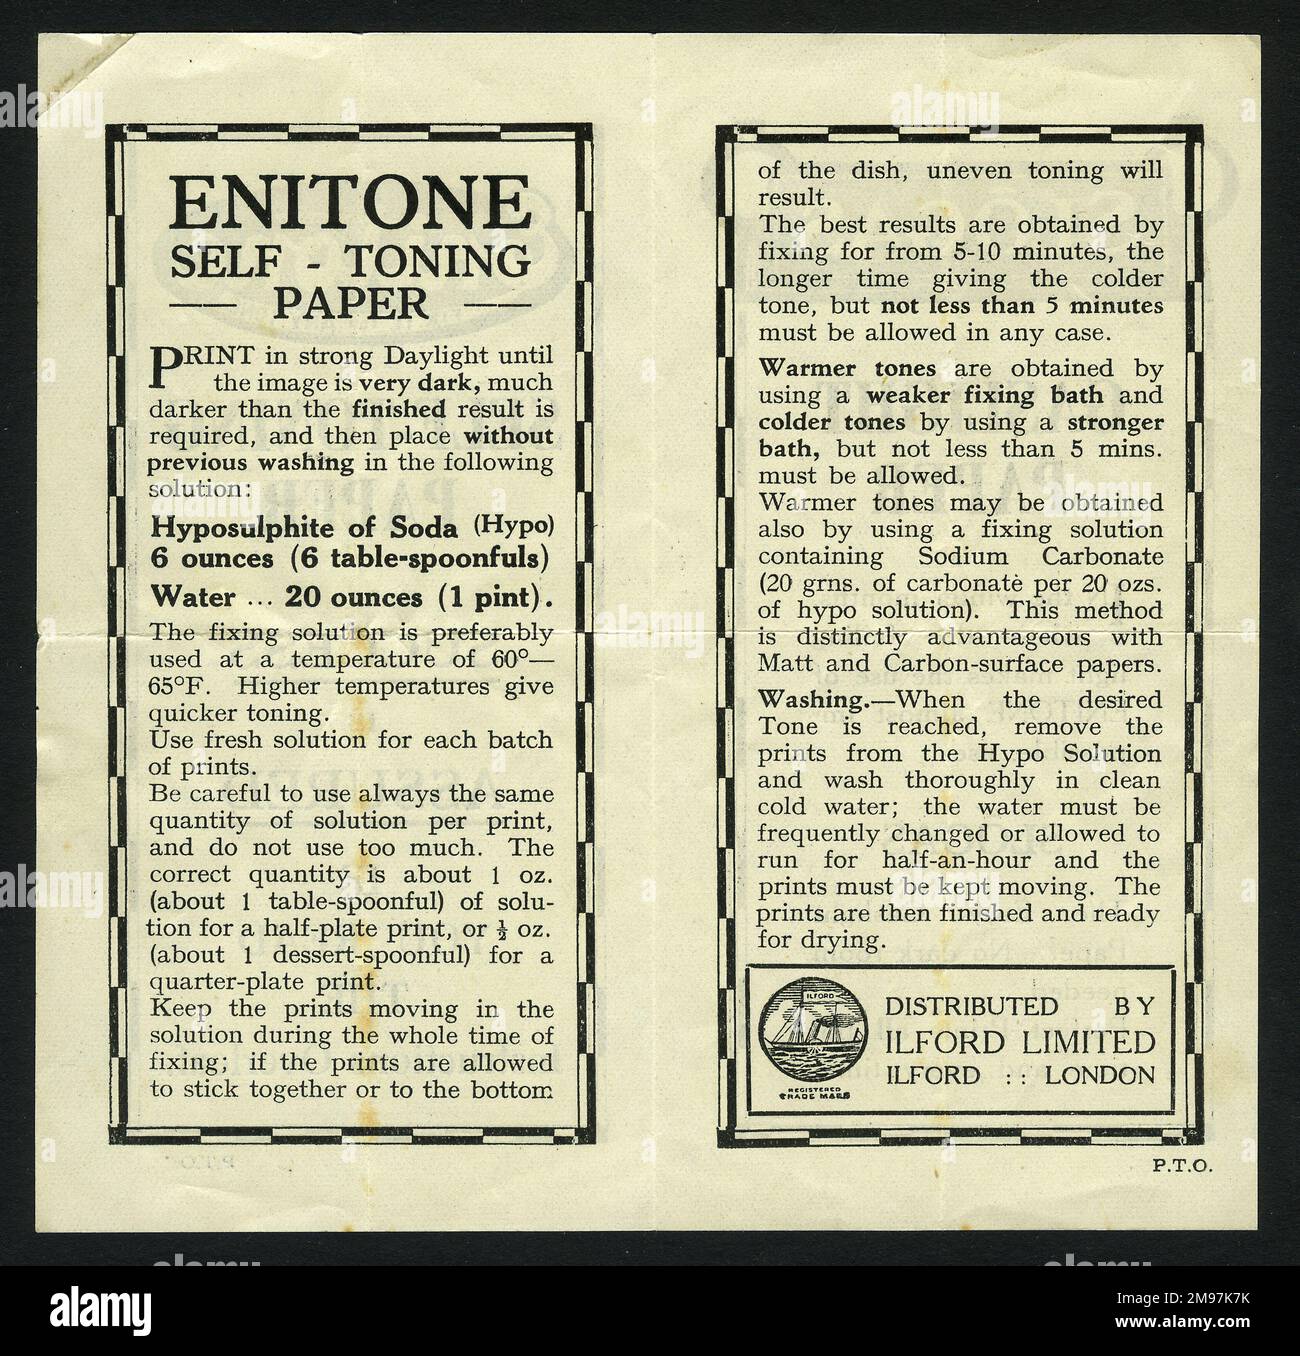 Bedienungsanleitung für selbsttonendes Fotopapier von Enitone (Innenseiten), vertrieben von Ilford Limited, Ilford, London. (2 von 2) Stockfoto